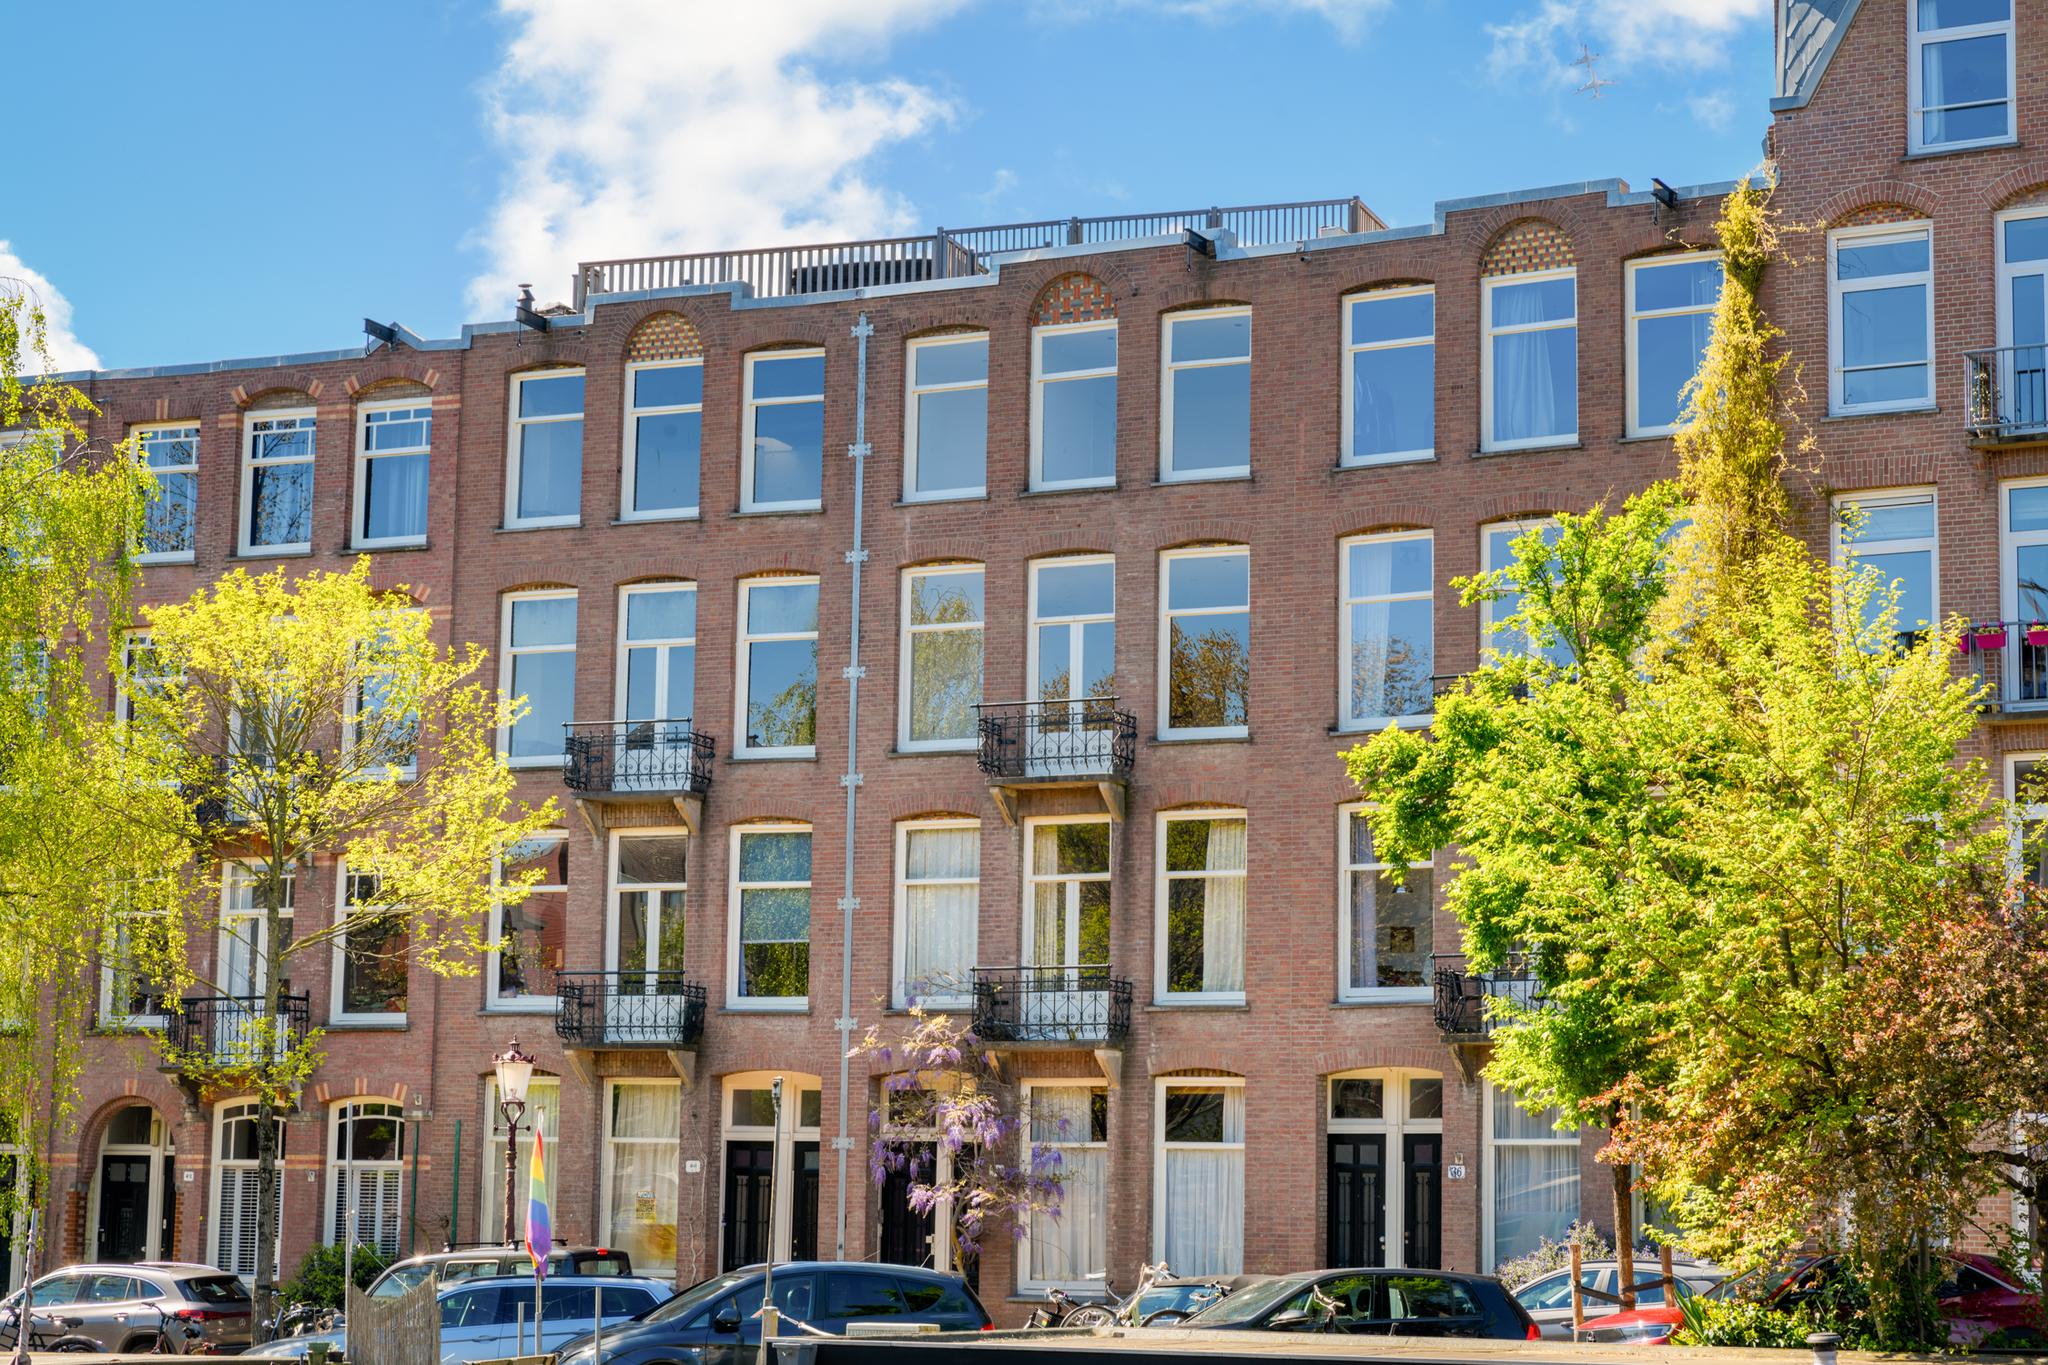 Bekijk foto 1/36 van apartment in Amsterdam